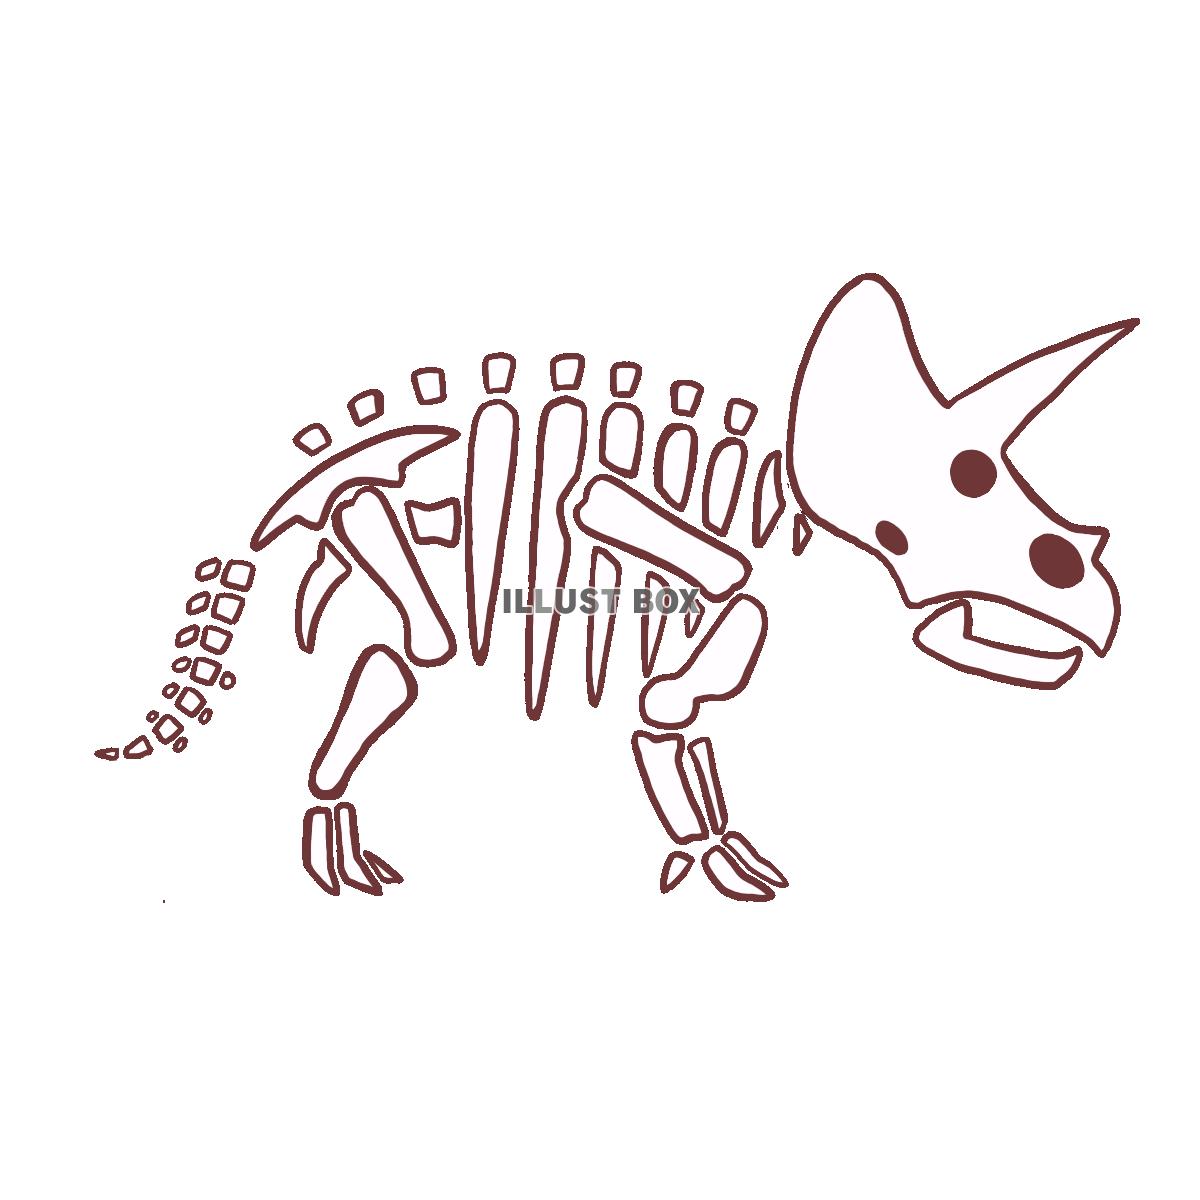 トリケラトプスの骨格